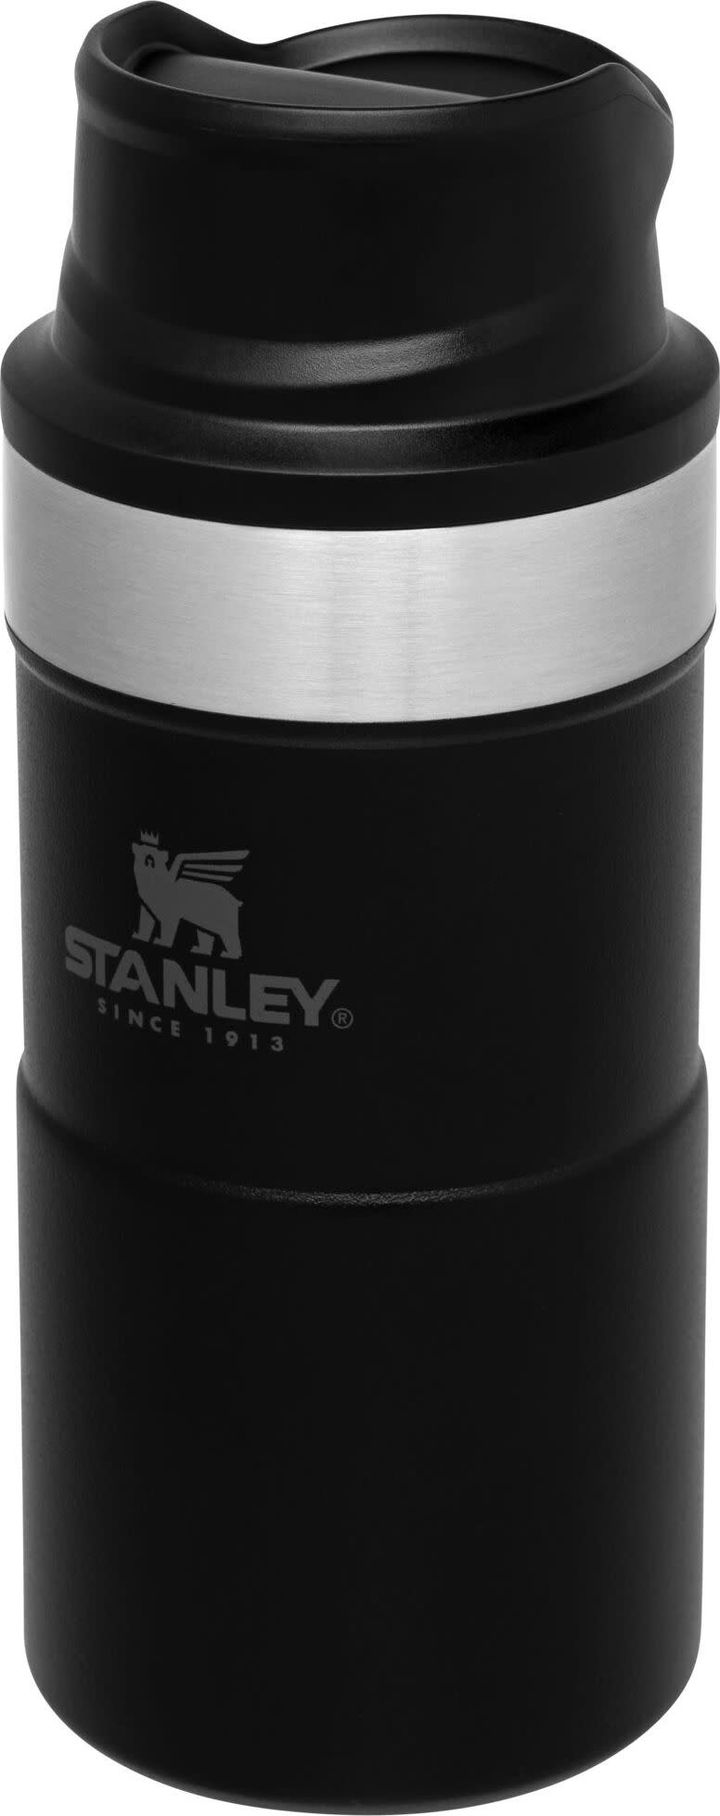 The Trigger-Action Travel Mug 0.25 L Matte Black Stanley